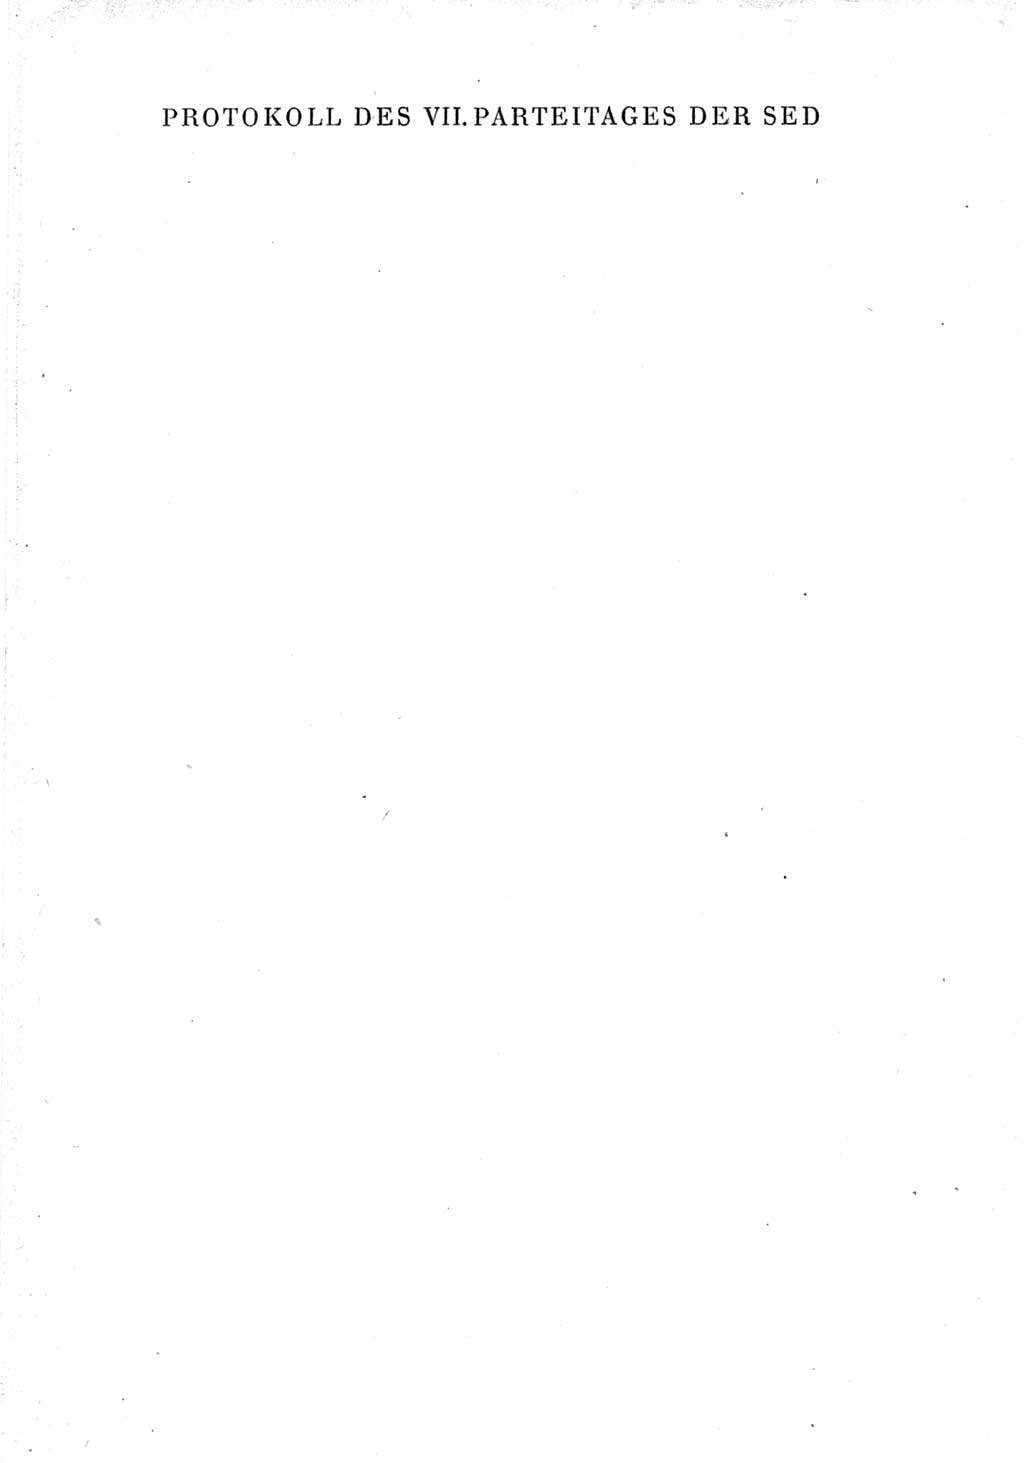 Protokoll der Verhandlungen des Ⅶ. Parteitages der Sozialistischen Einheitspartei Deutschlands (SED) [Deutsche Demokratische Republik (DDR)] 1967, Band Ⅳ, Seite 1 (Prot. Verh. Ⅶ. PT SED DDR 1967, Bd. Ⅳ, S. 1)